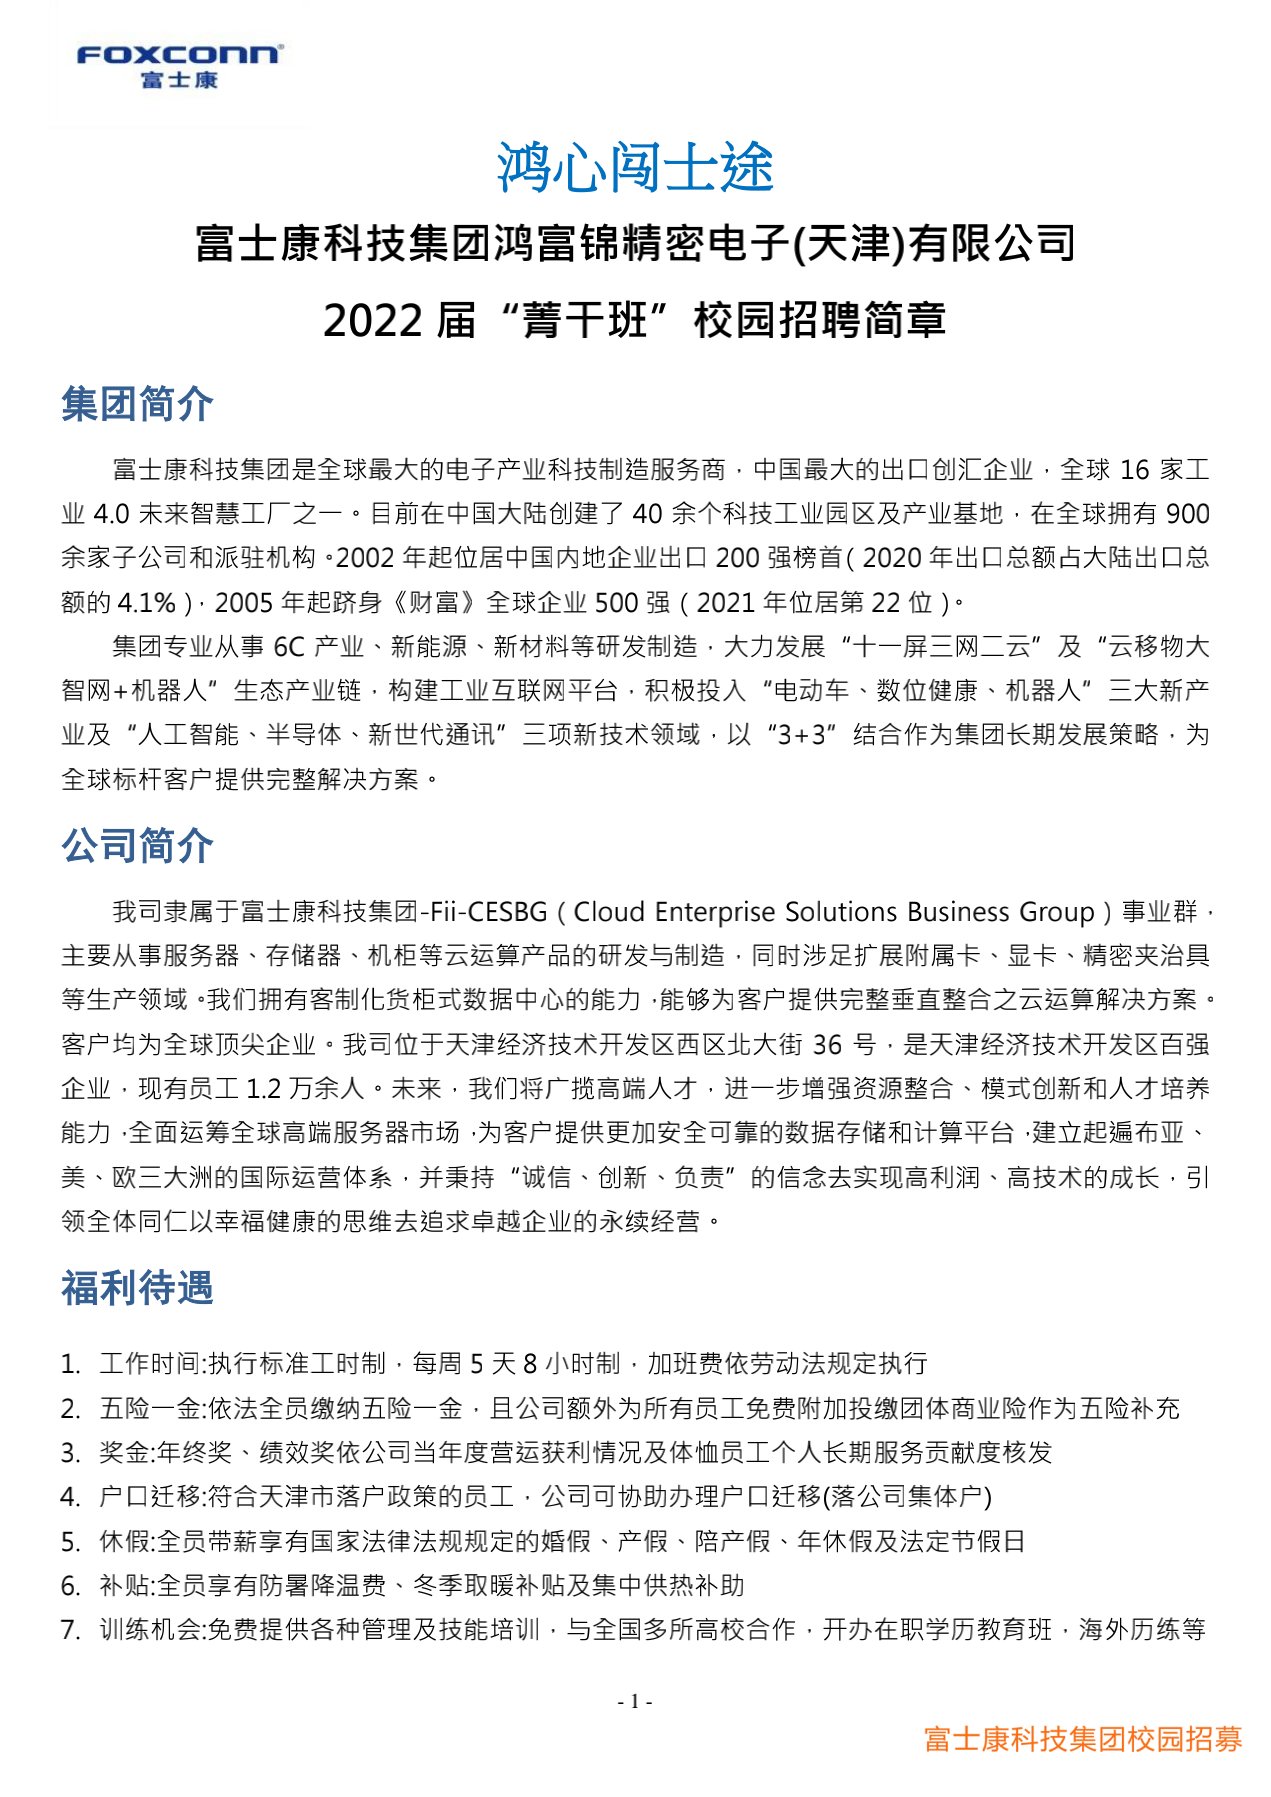 富士康科技集团天津科技园2022届校园招聘简章20210901_1.jpg